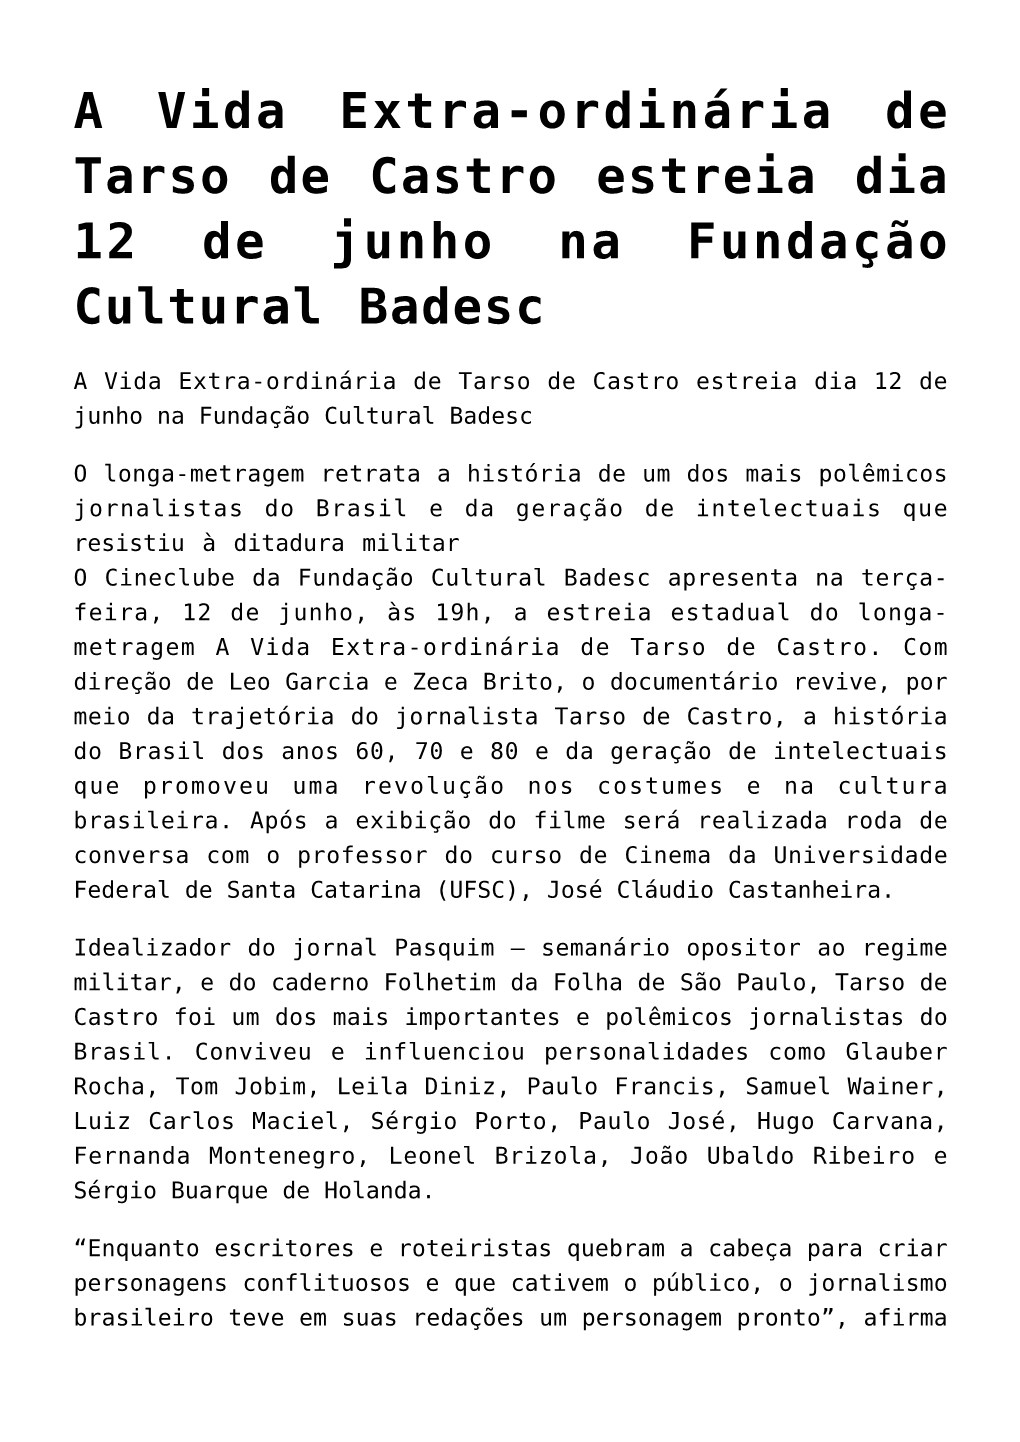 A Vida Extra-Ordinária De Tarso De Castro Estreia Dia 12 De Junho Na Fundação Cultural Badesc